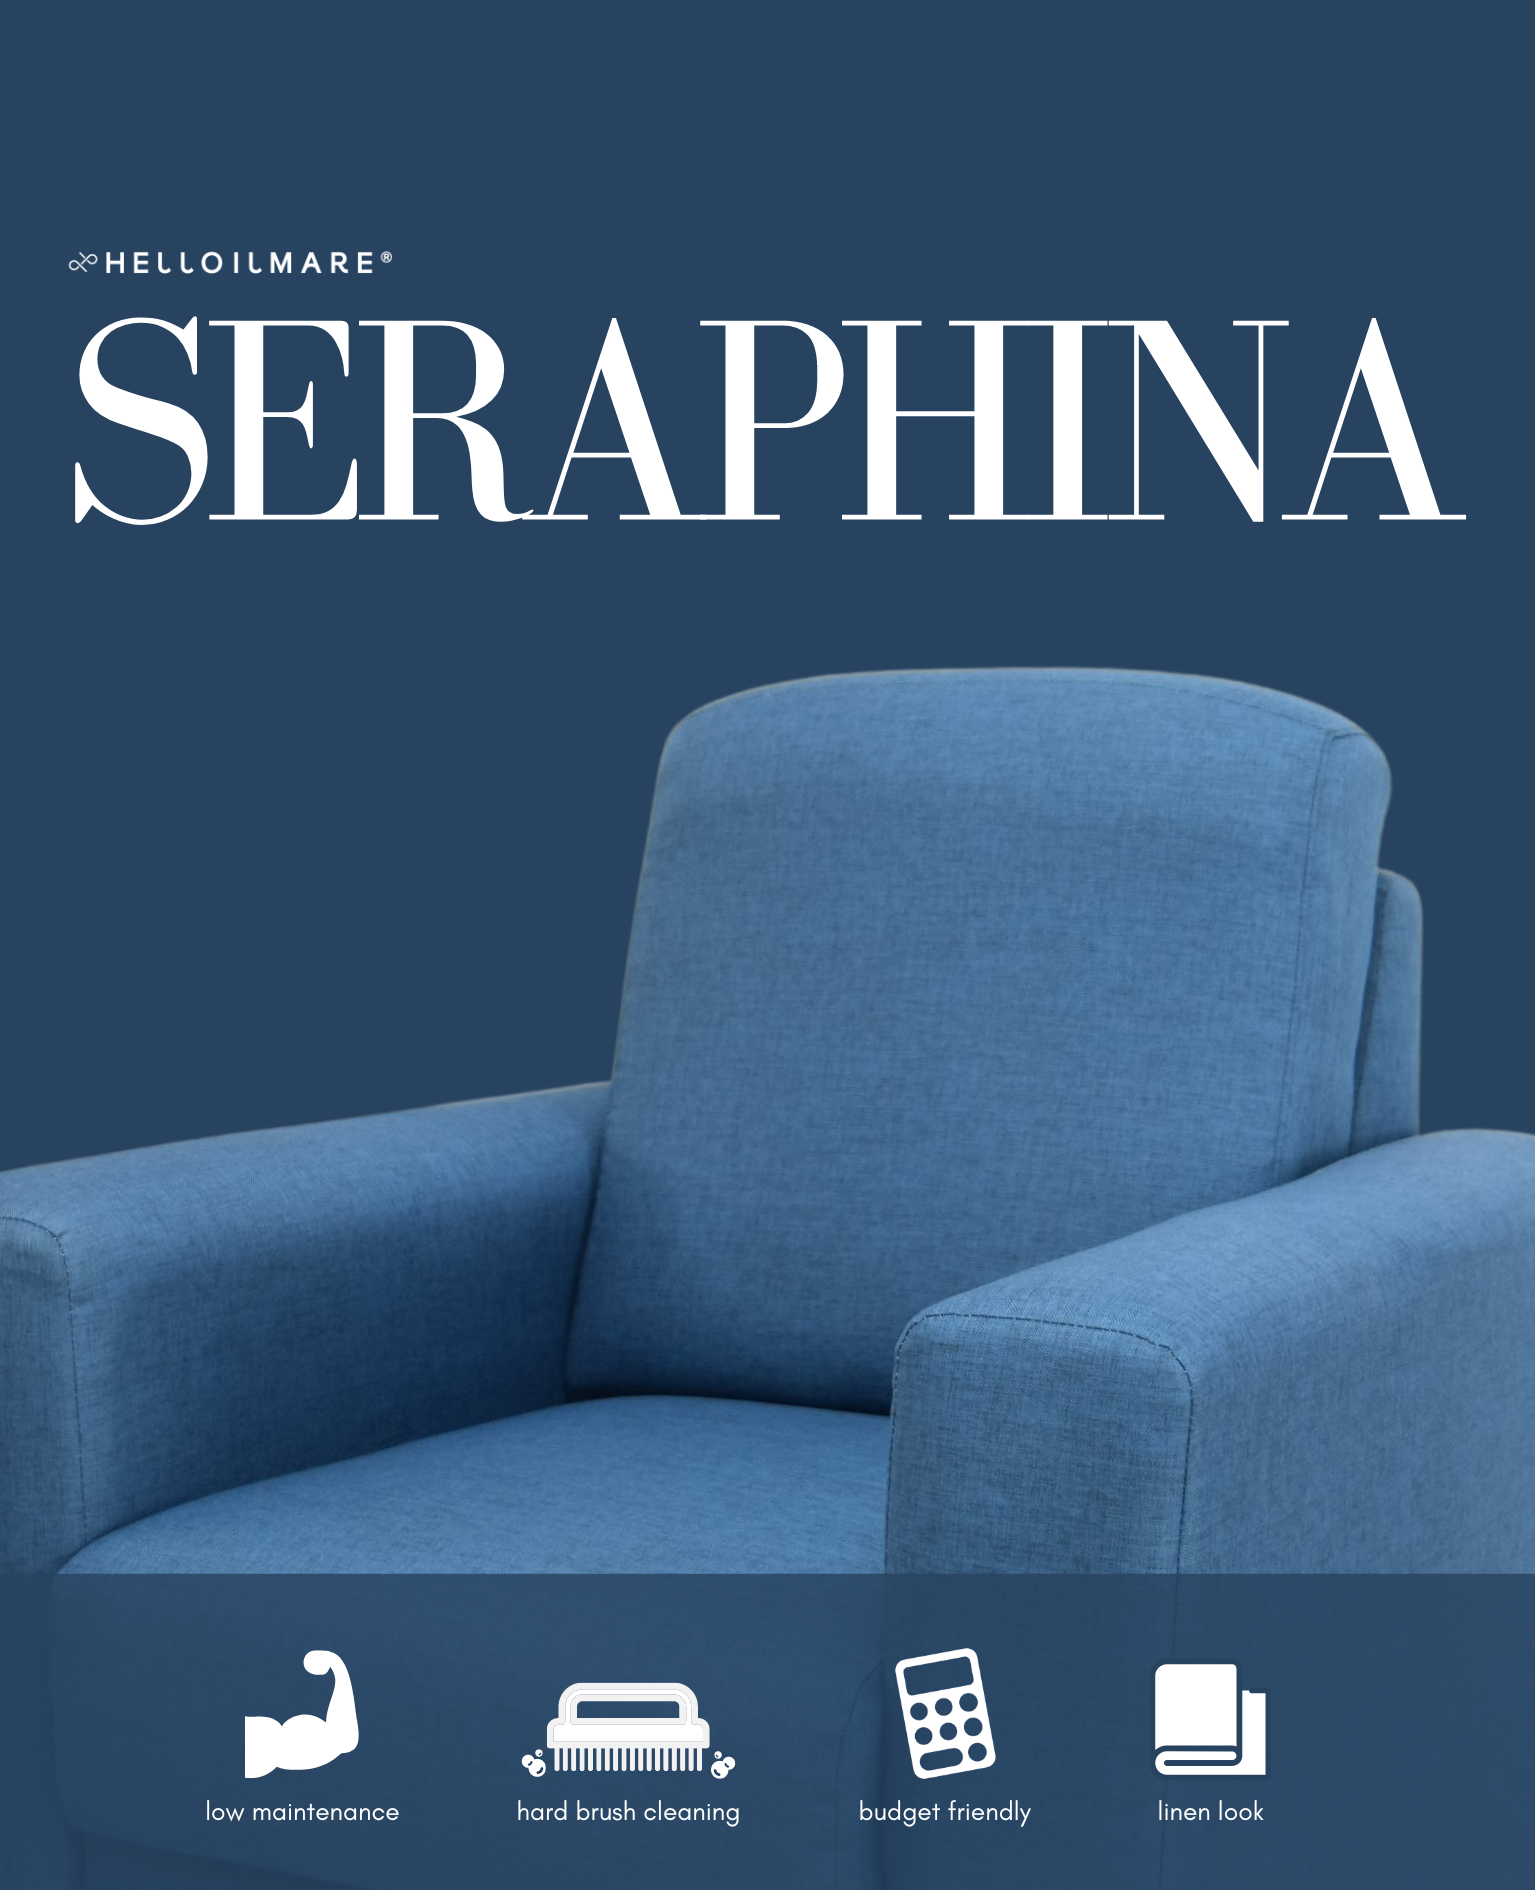 2 Seater Seraphina - Helloilmare